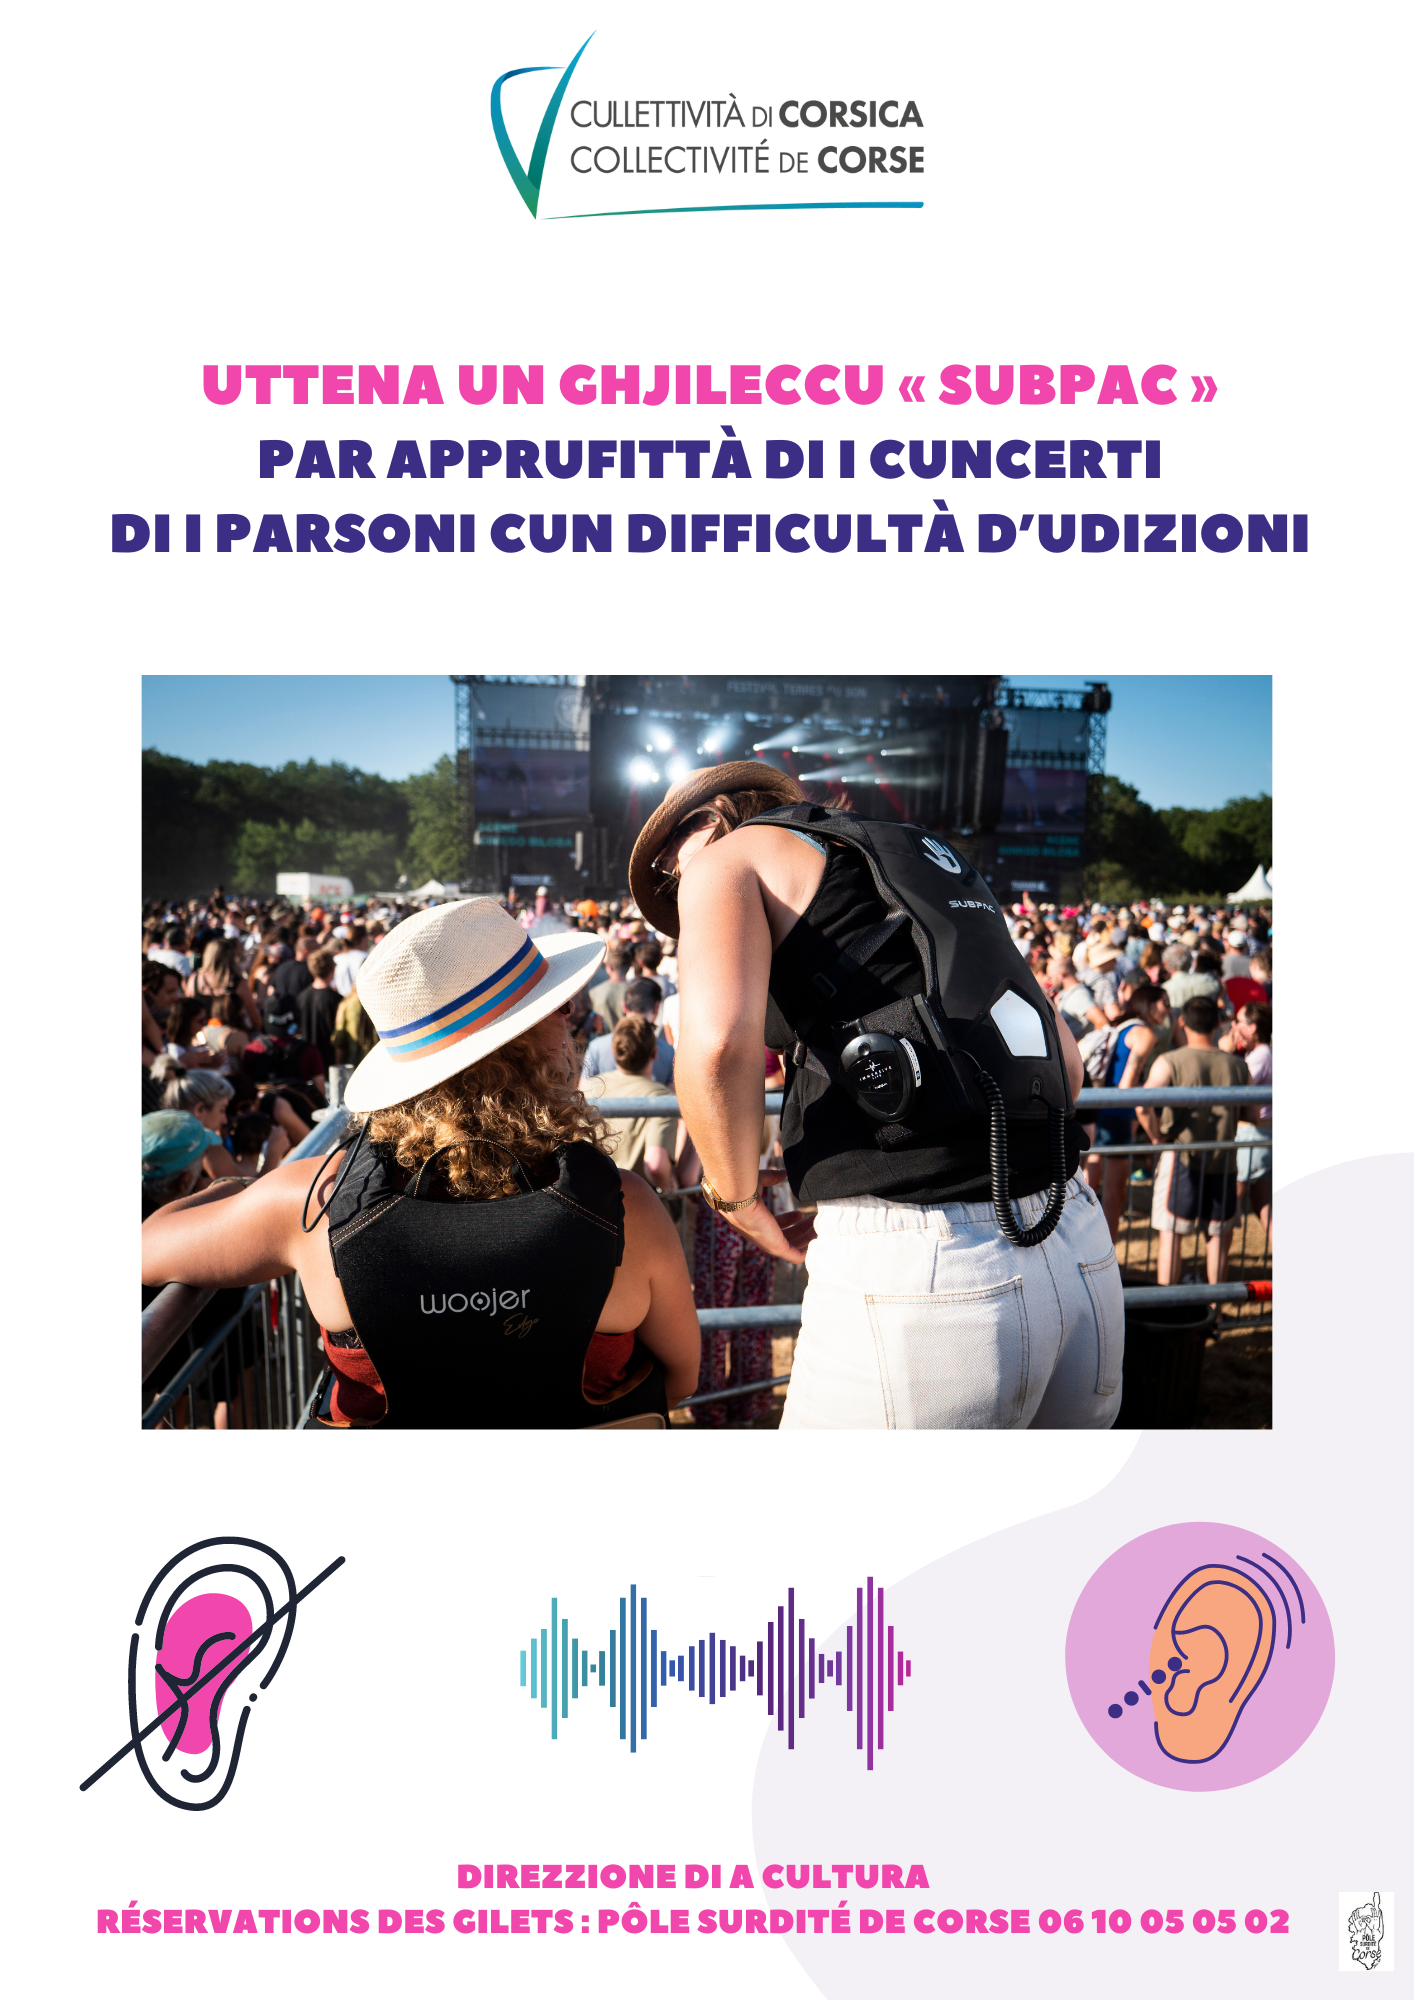 Retour en images sur la présentation du dispositif "Gilet SubPac" lors du "Aio Festival",dimanche 30 juillet à Aiacciu, en présence d'Antonia Luciani, Conseillère exécutive en charge de la culture, du patrimoine, de l’éducation et de la formation